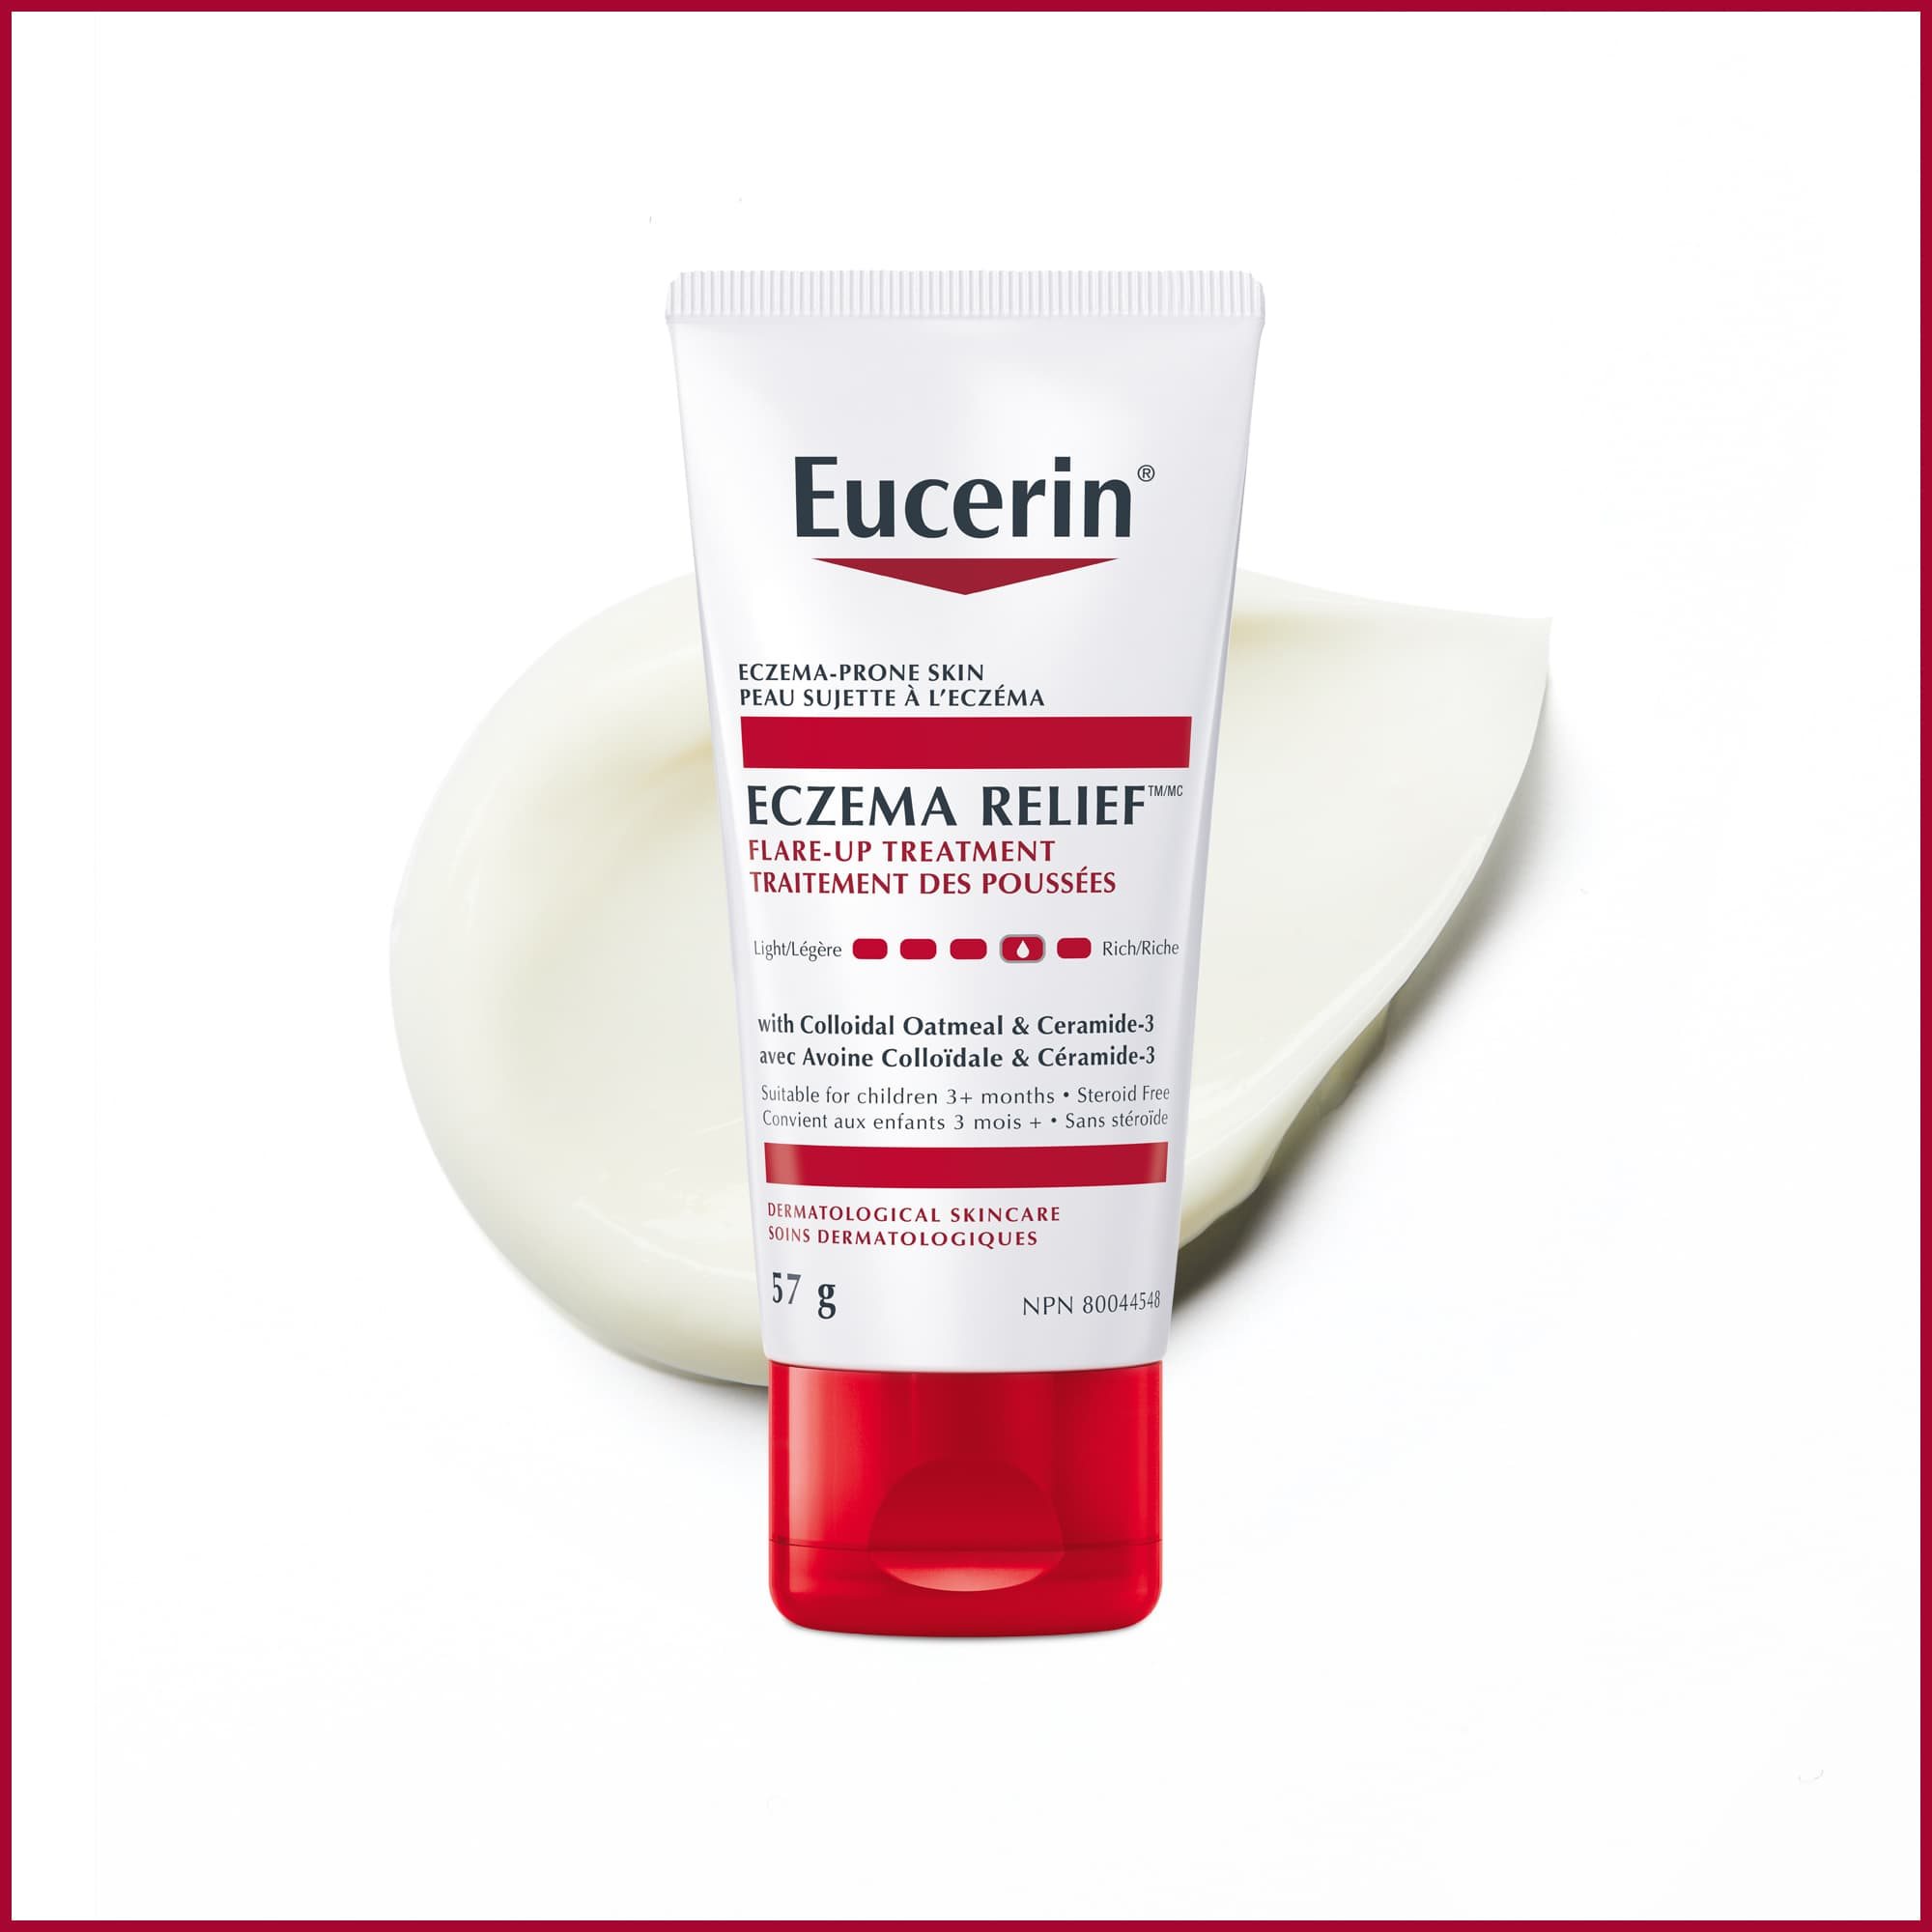 Bouteille de crème Eucerin 57g pour le traitement des poussées d'eczéma avec traînée du produit en arrière-plan.